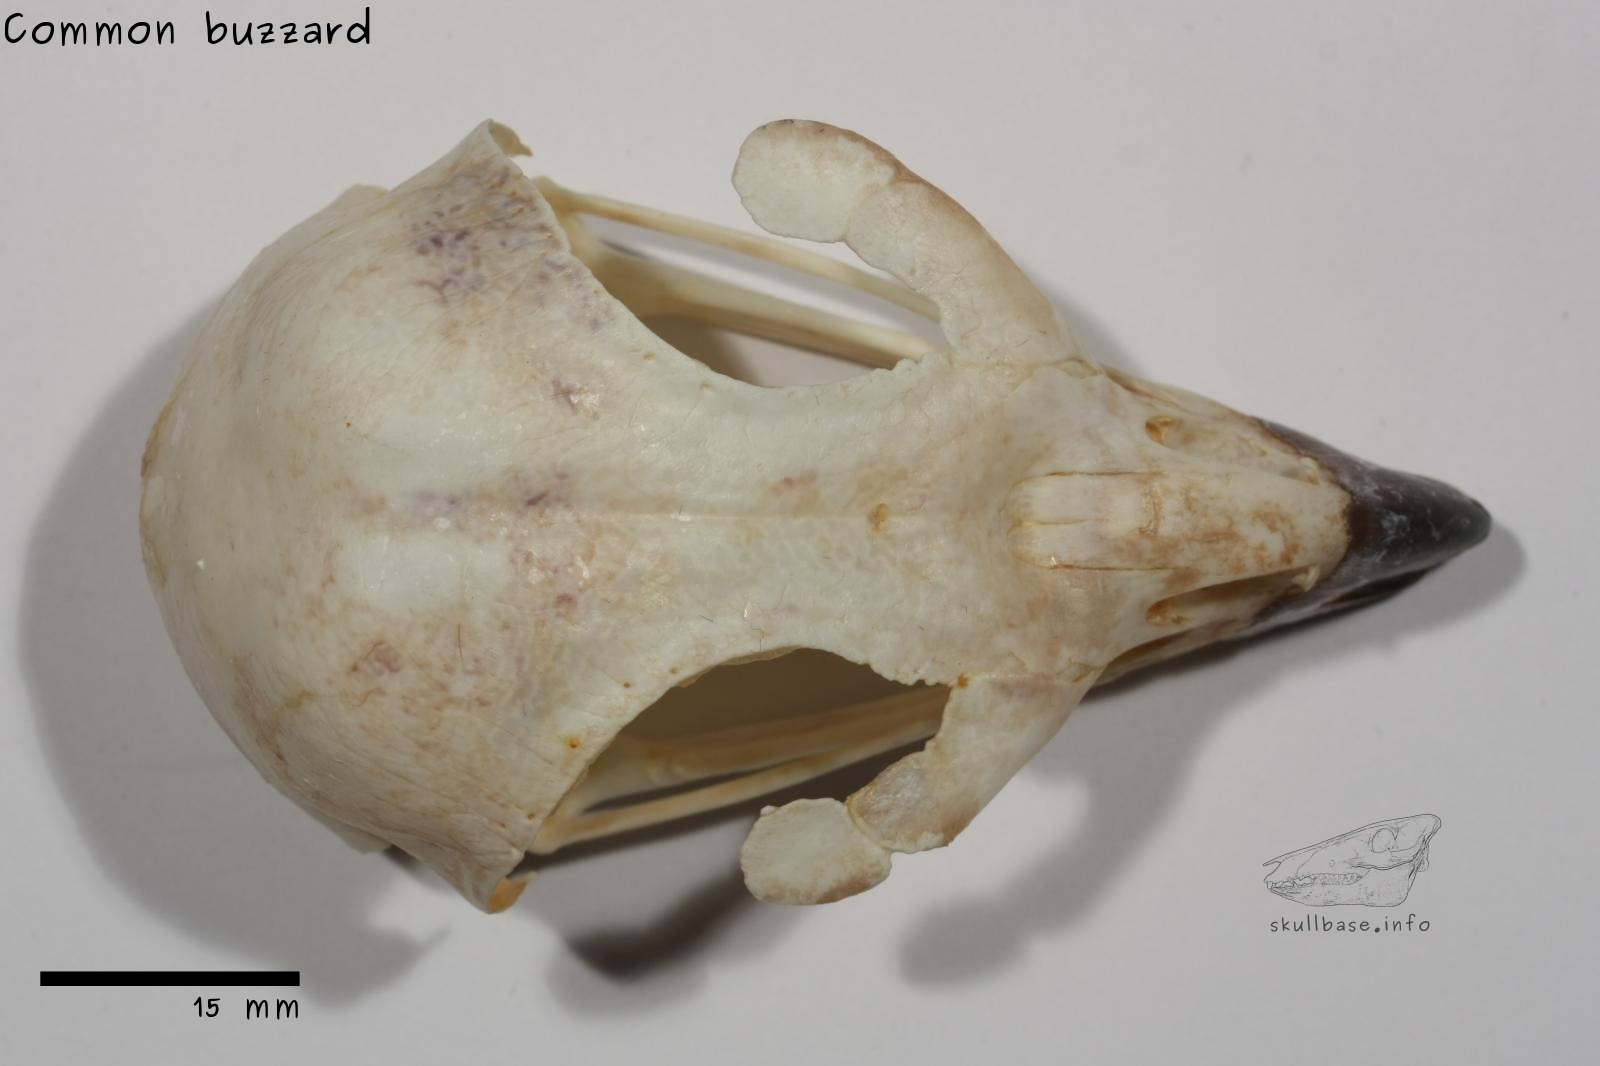 Common buzzard (Buteo buteo) skull dorsal view